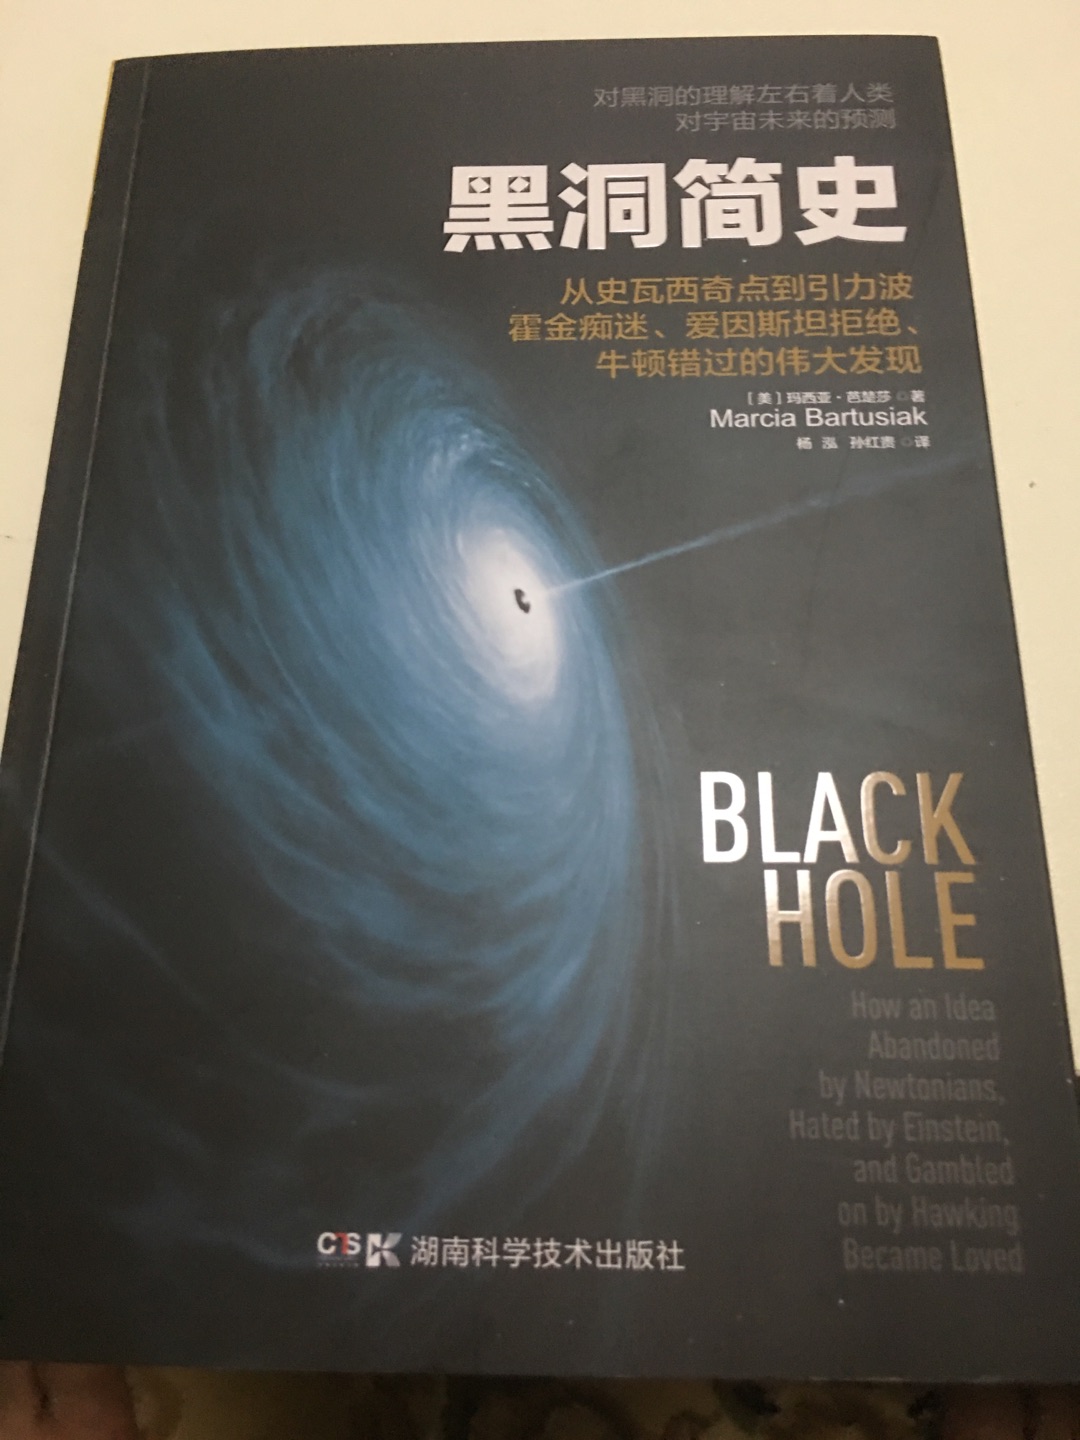 关于黑洞，我们知道的并不多，本书可以让我们一探黑洞